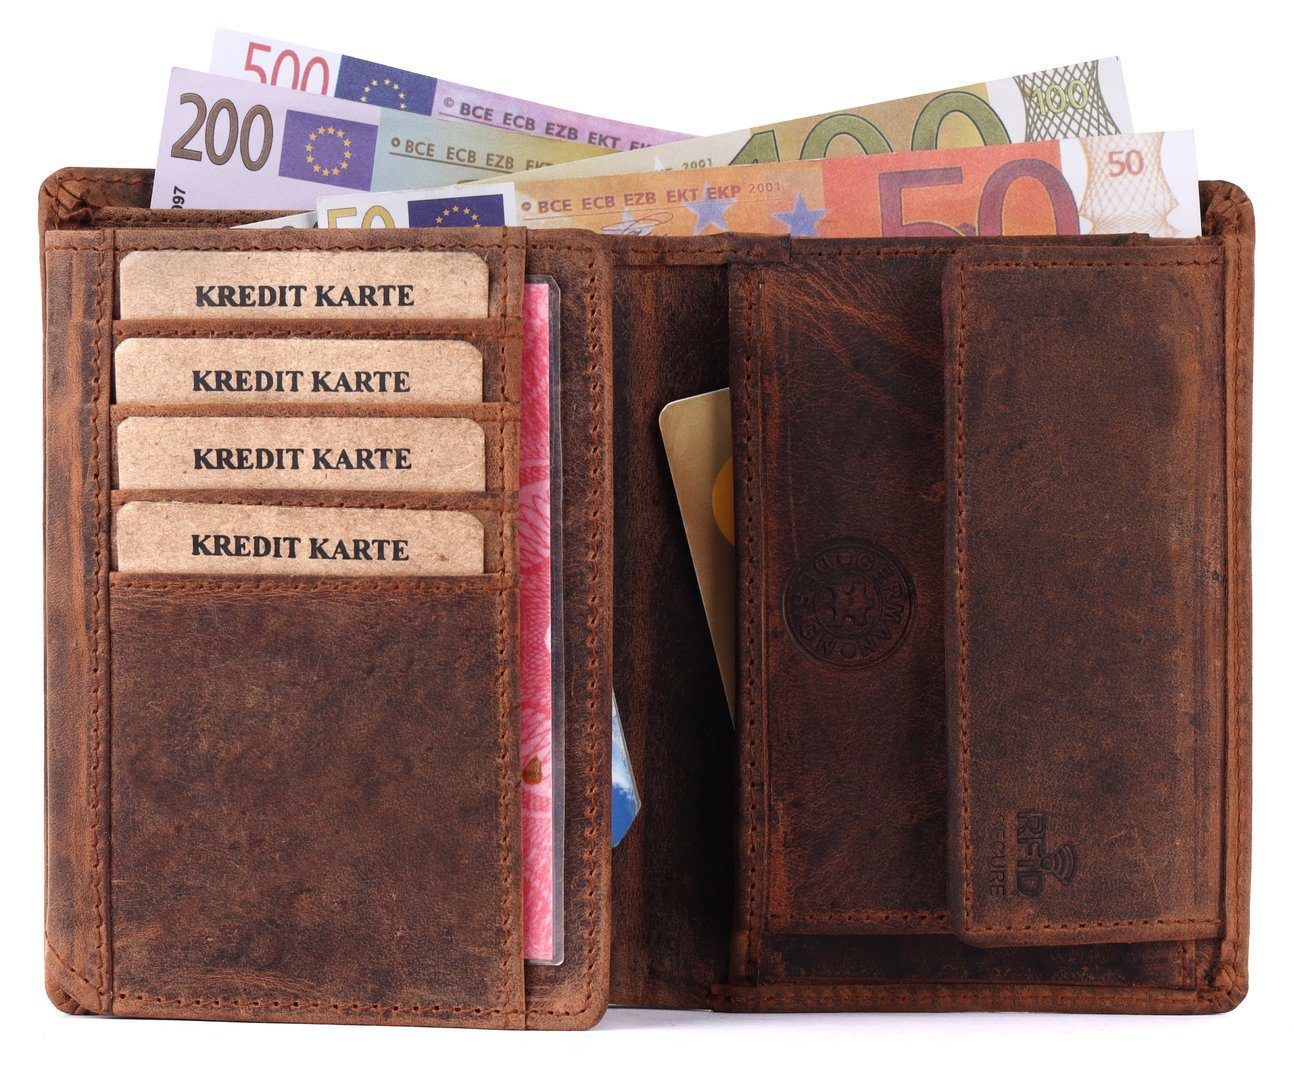 SHG Geldbörse Herren Leder Münzfach Männerbörse Börse mit Brieftasche Lederbörse Schutz RFID Büffelleder Portemonnaie